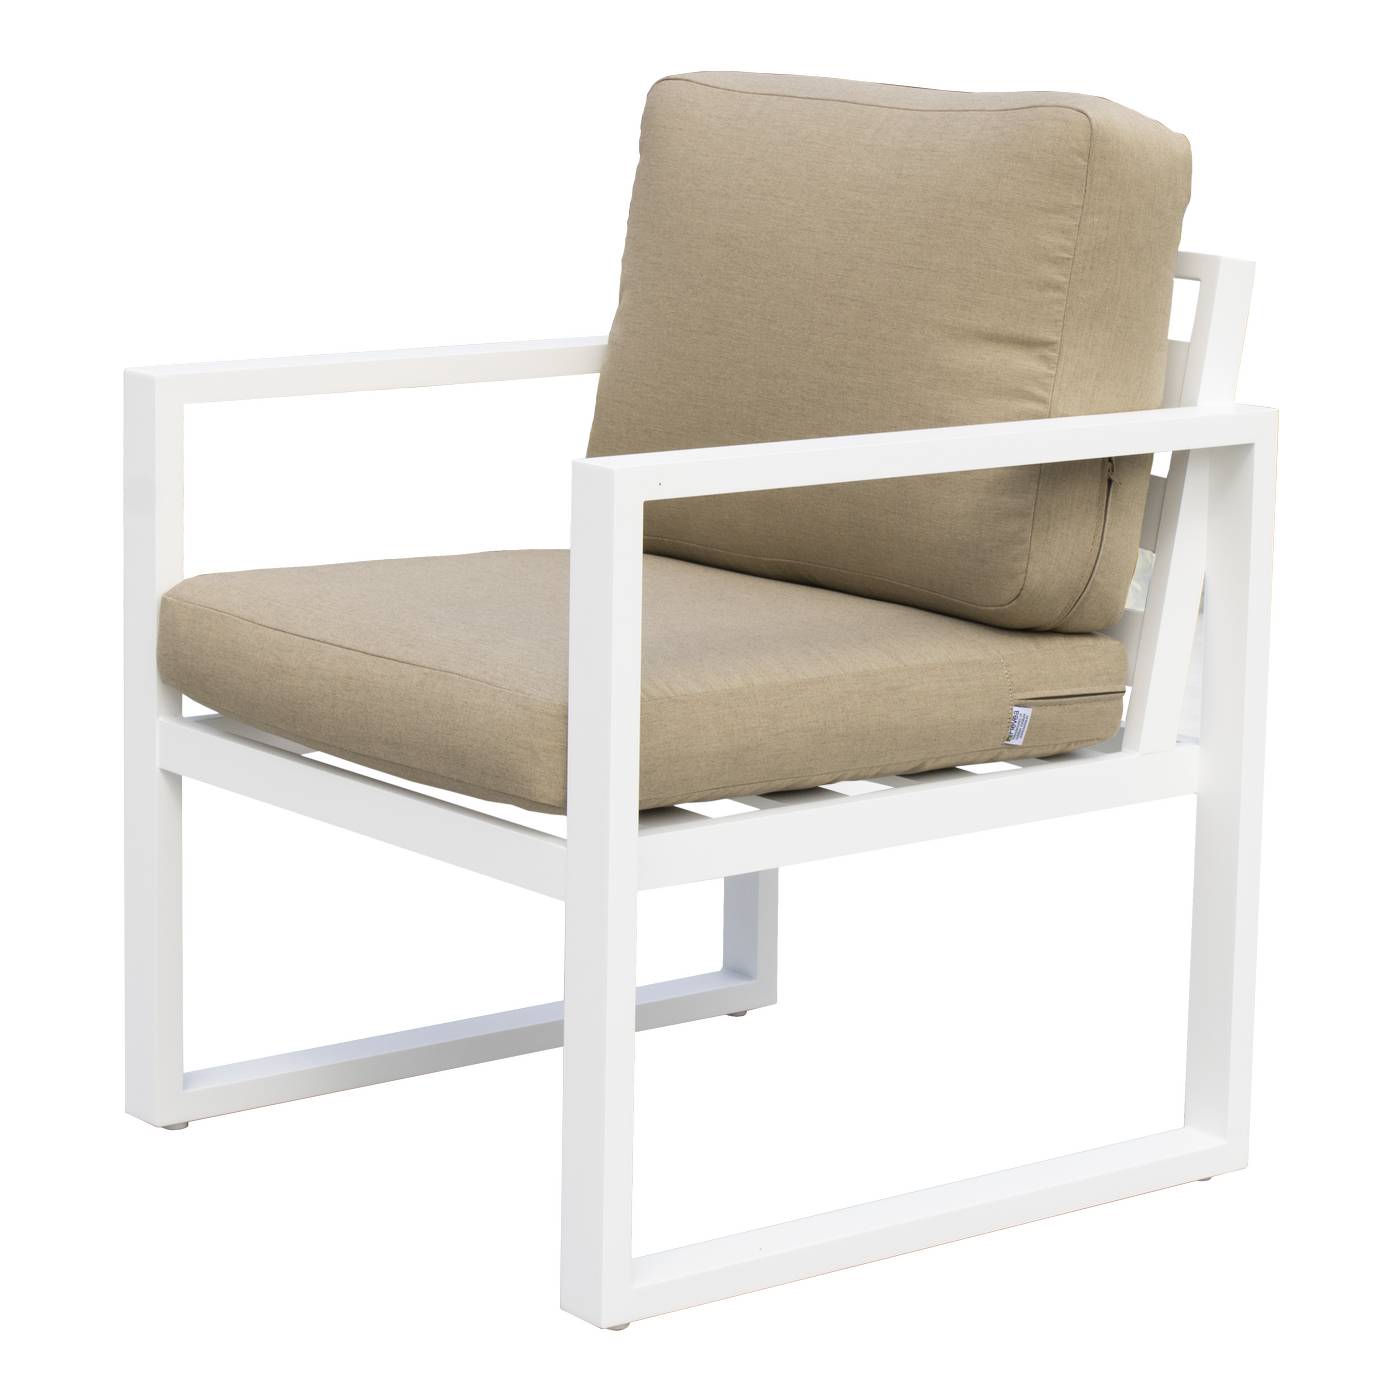 Sofá 3p + sillones + taburetes de aluminio [Fenix] - Conjunto de aluminio para jardín: 1 sofá 3 plazas + 2 sillones + 1 mesa de centro + 2 reposapiés. Disponible en cinco colores diferentes.